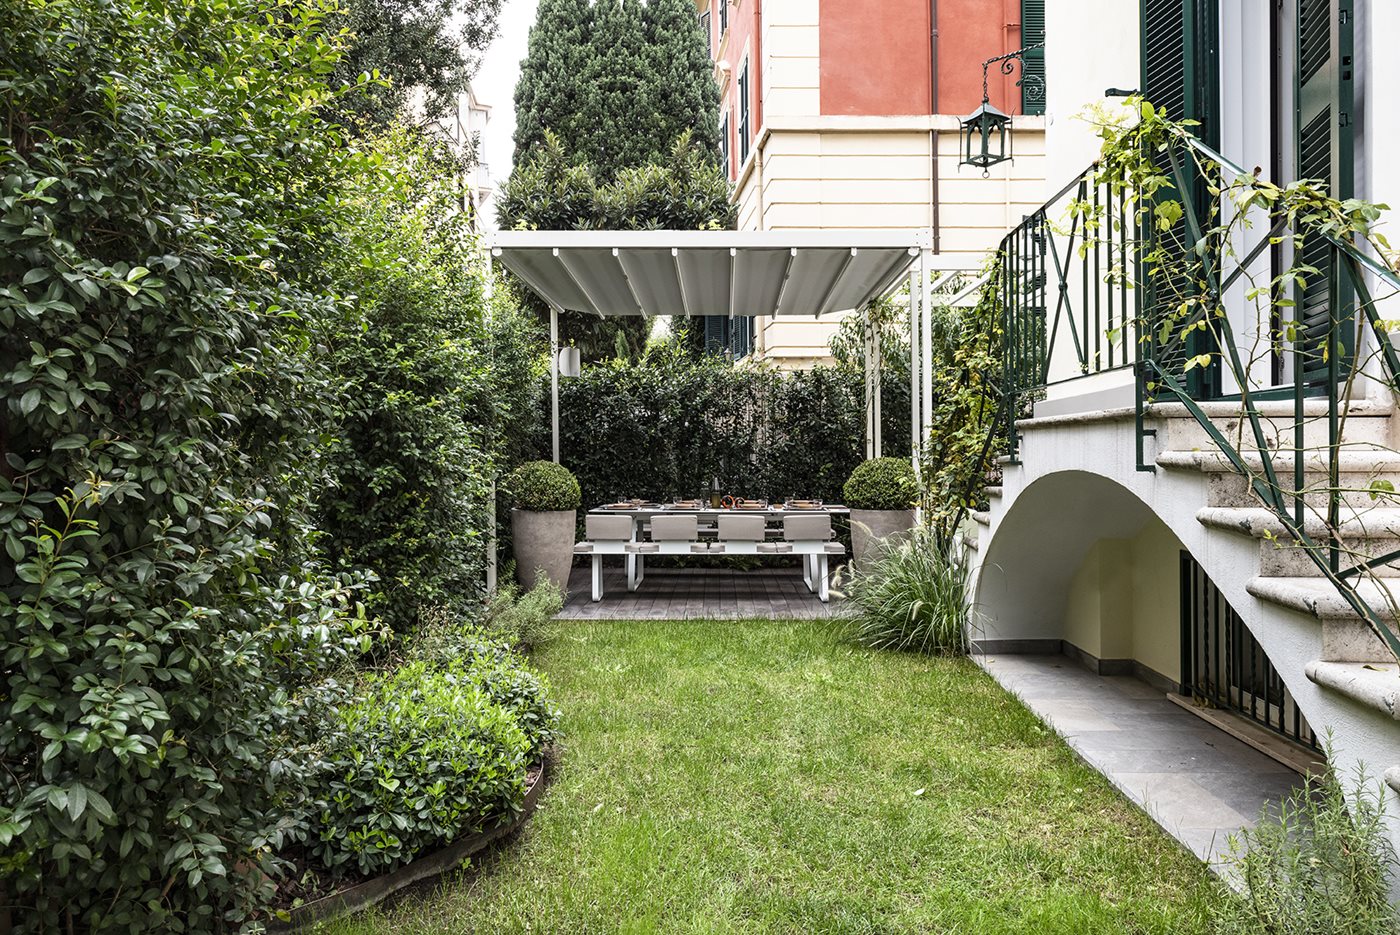 Terraza con pérgola bioclimática en Madrid - Diseño de jardines y terrazas,  fuentes de jardín, proyectos de paisajismo.